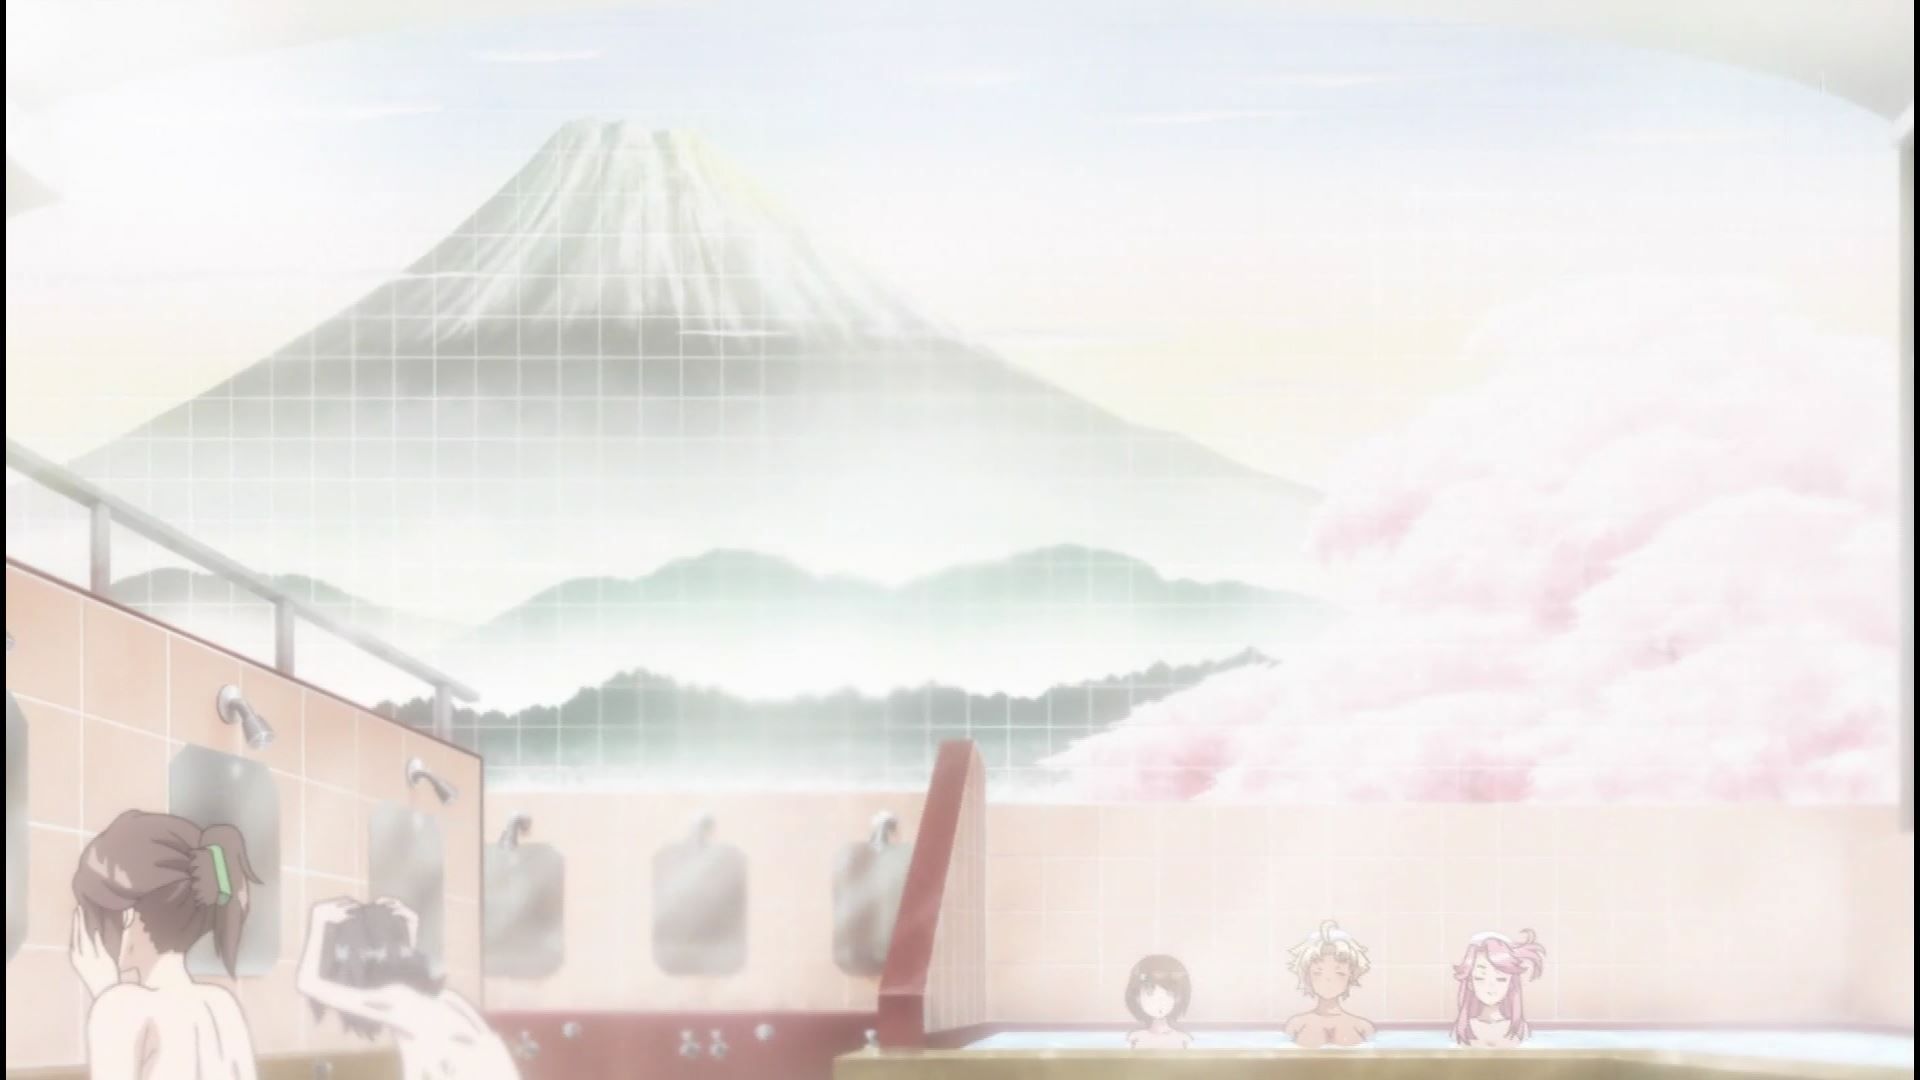 Anime [Kandagawa JETGIRLS] 3 episodes, such as girls erotic and public bathing scene! 6